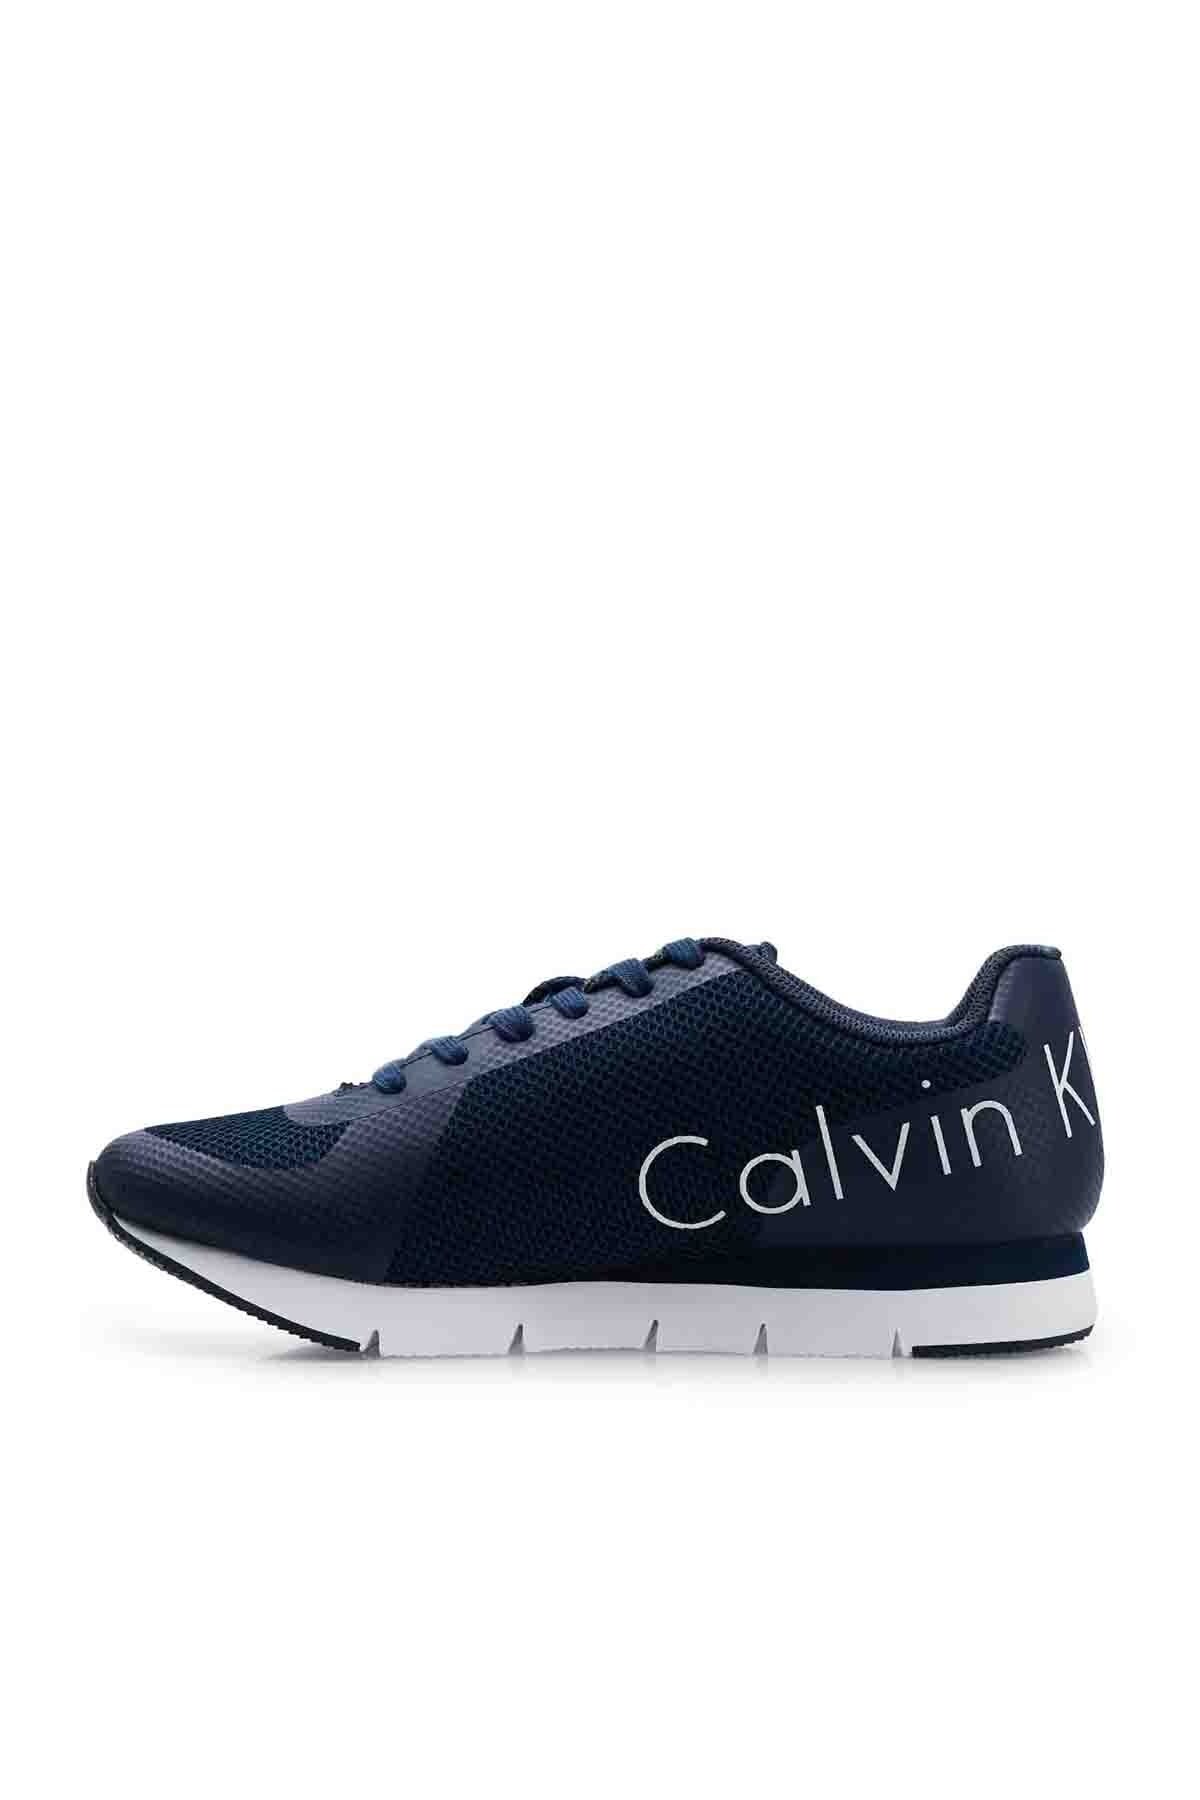 Calvin Klein Marka Logolu Erkek Ayakkabı 0000SE8526 NVY LACİVERT